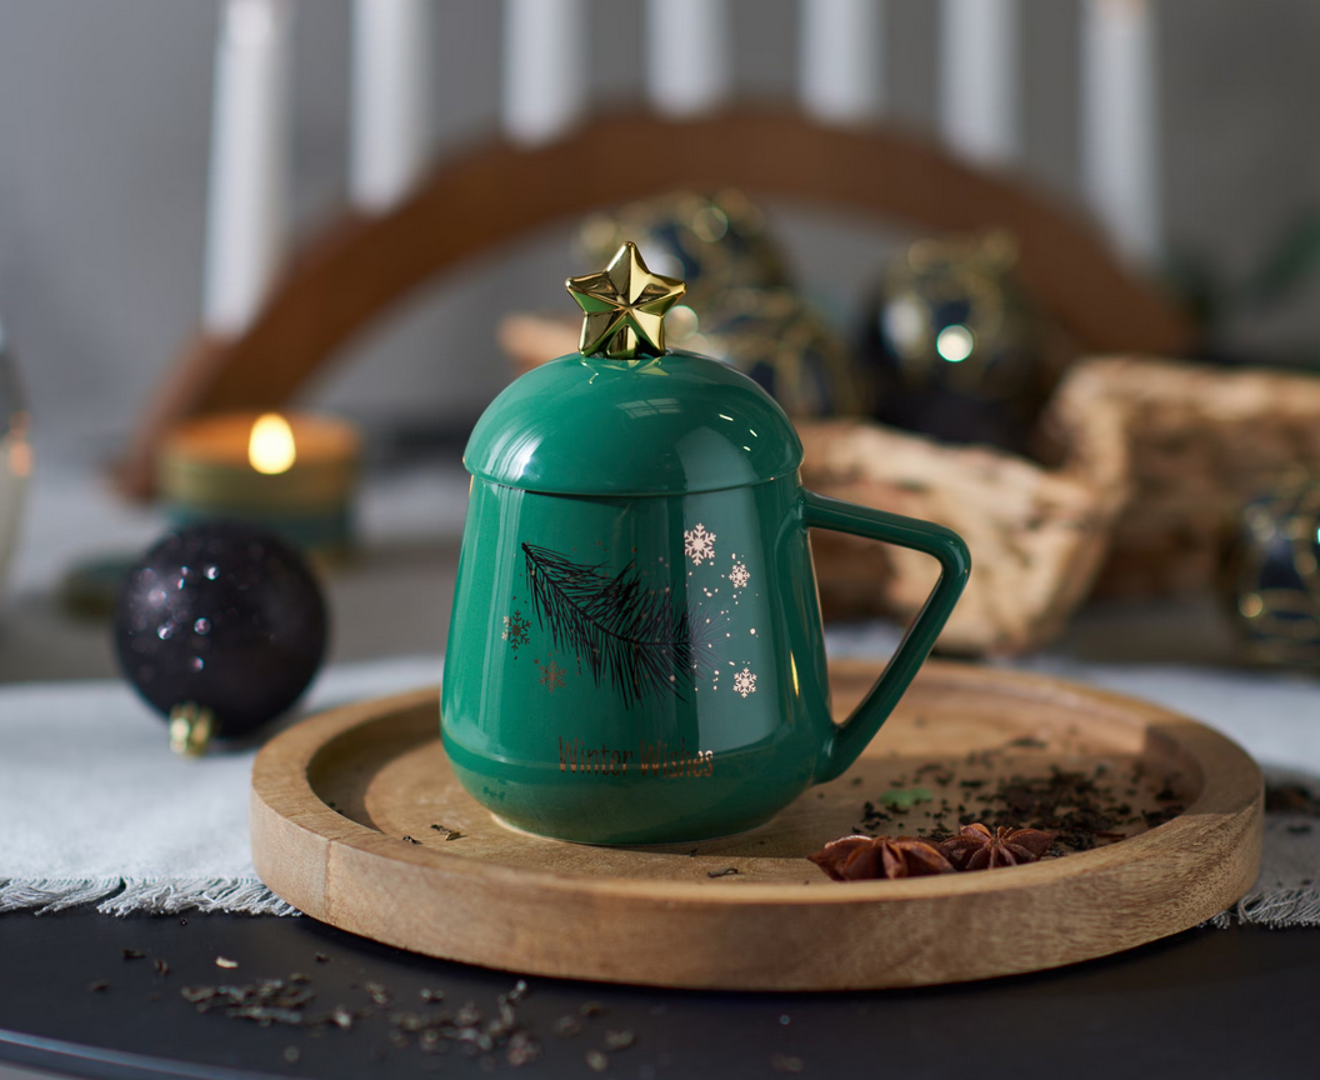 Miris božićnih kolača i čaja mnogima je omiljen, a još kad je ovako poslužen teško je odoljeti. Čajnik koji želimo u svom domu